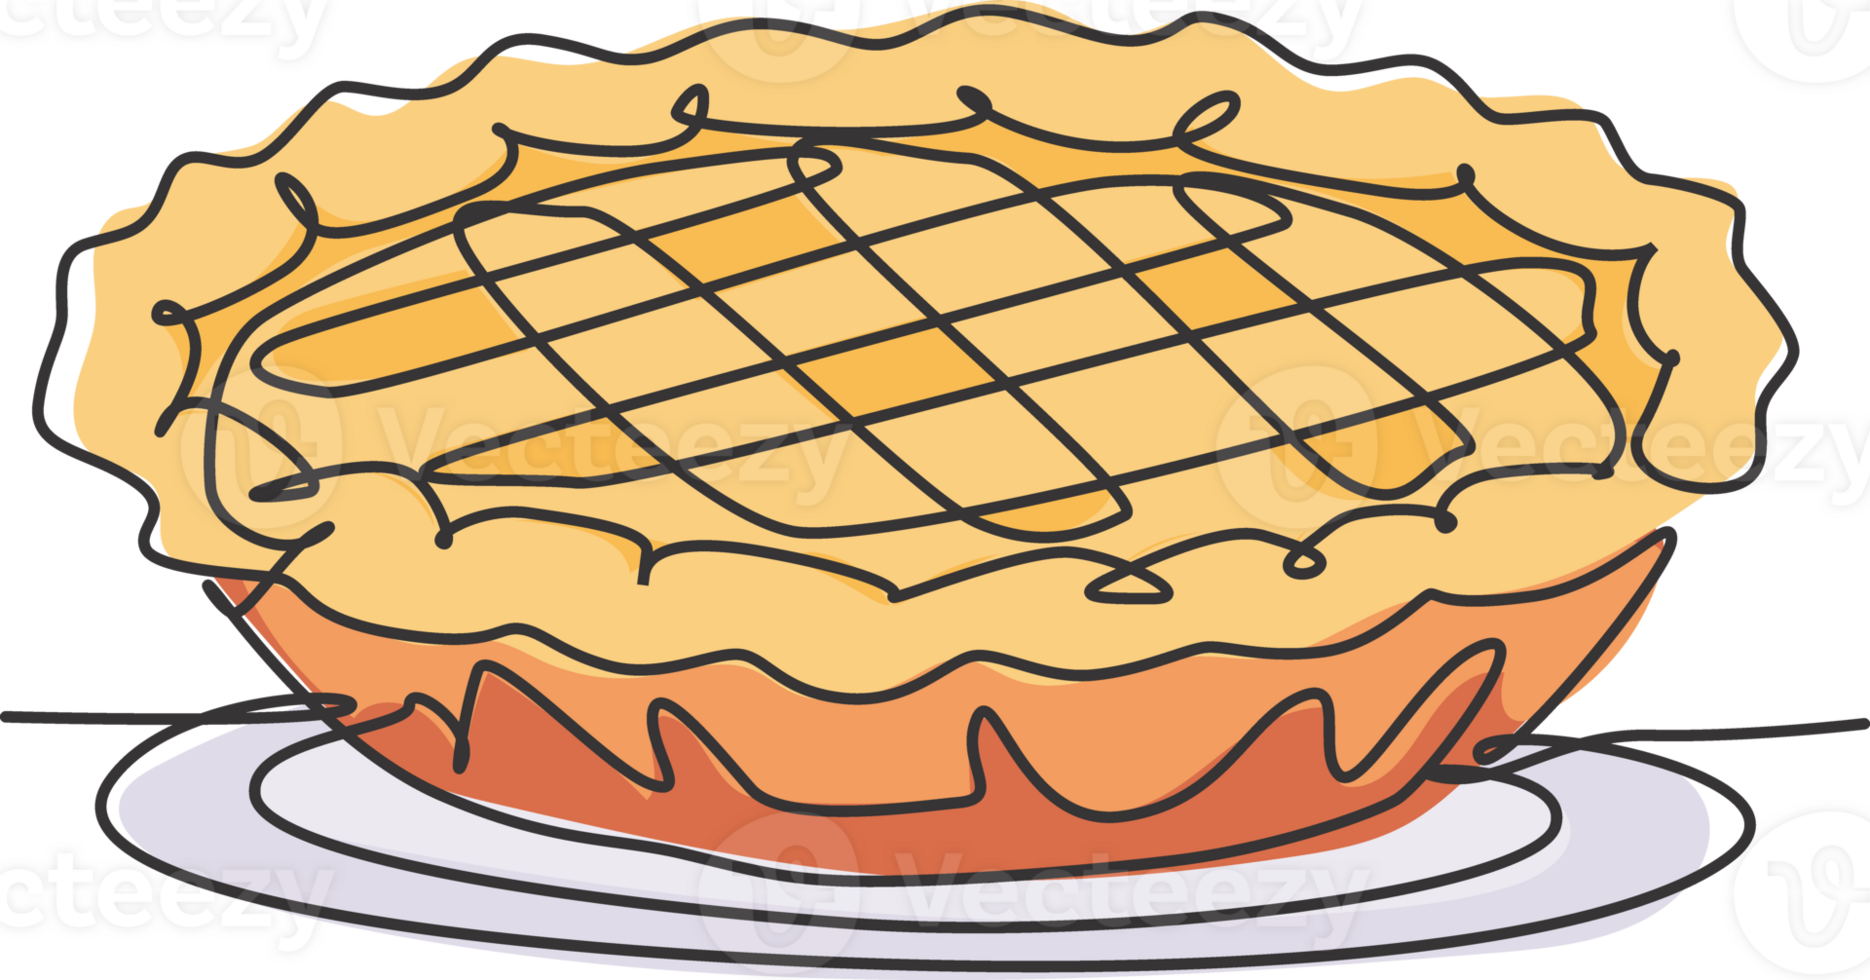 single doorlopend lijn tekening van gestileerde heerlijk appel taart voor taart logo kunst label. gebakje winkel concept. modern een lijn trek ontwerp grafisch illustratie taart voedsel onderhoud png